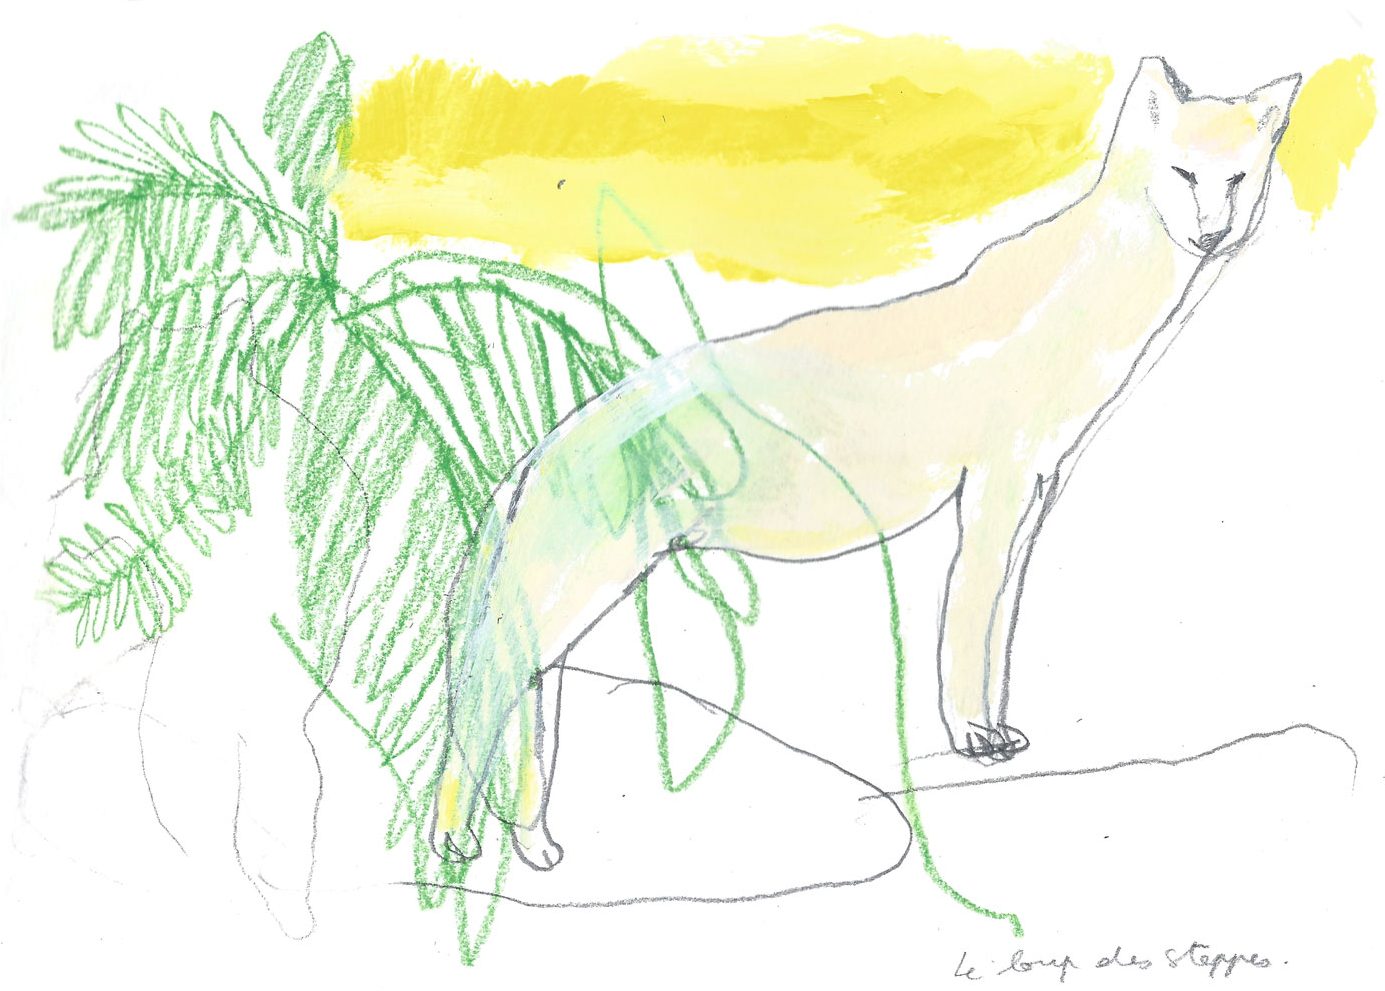 Le loup des steppes, acrylique et crayon, 2016